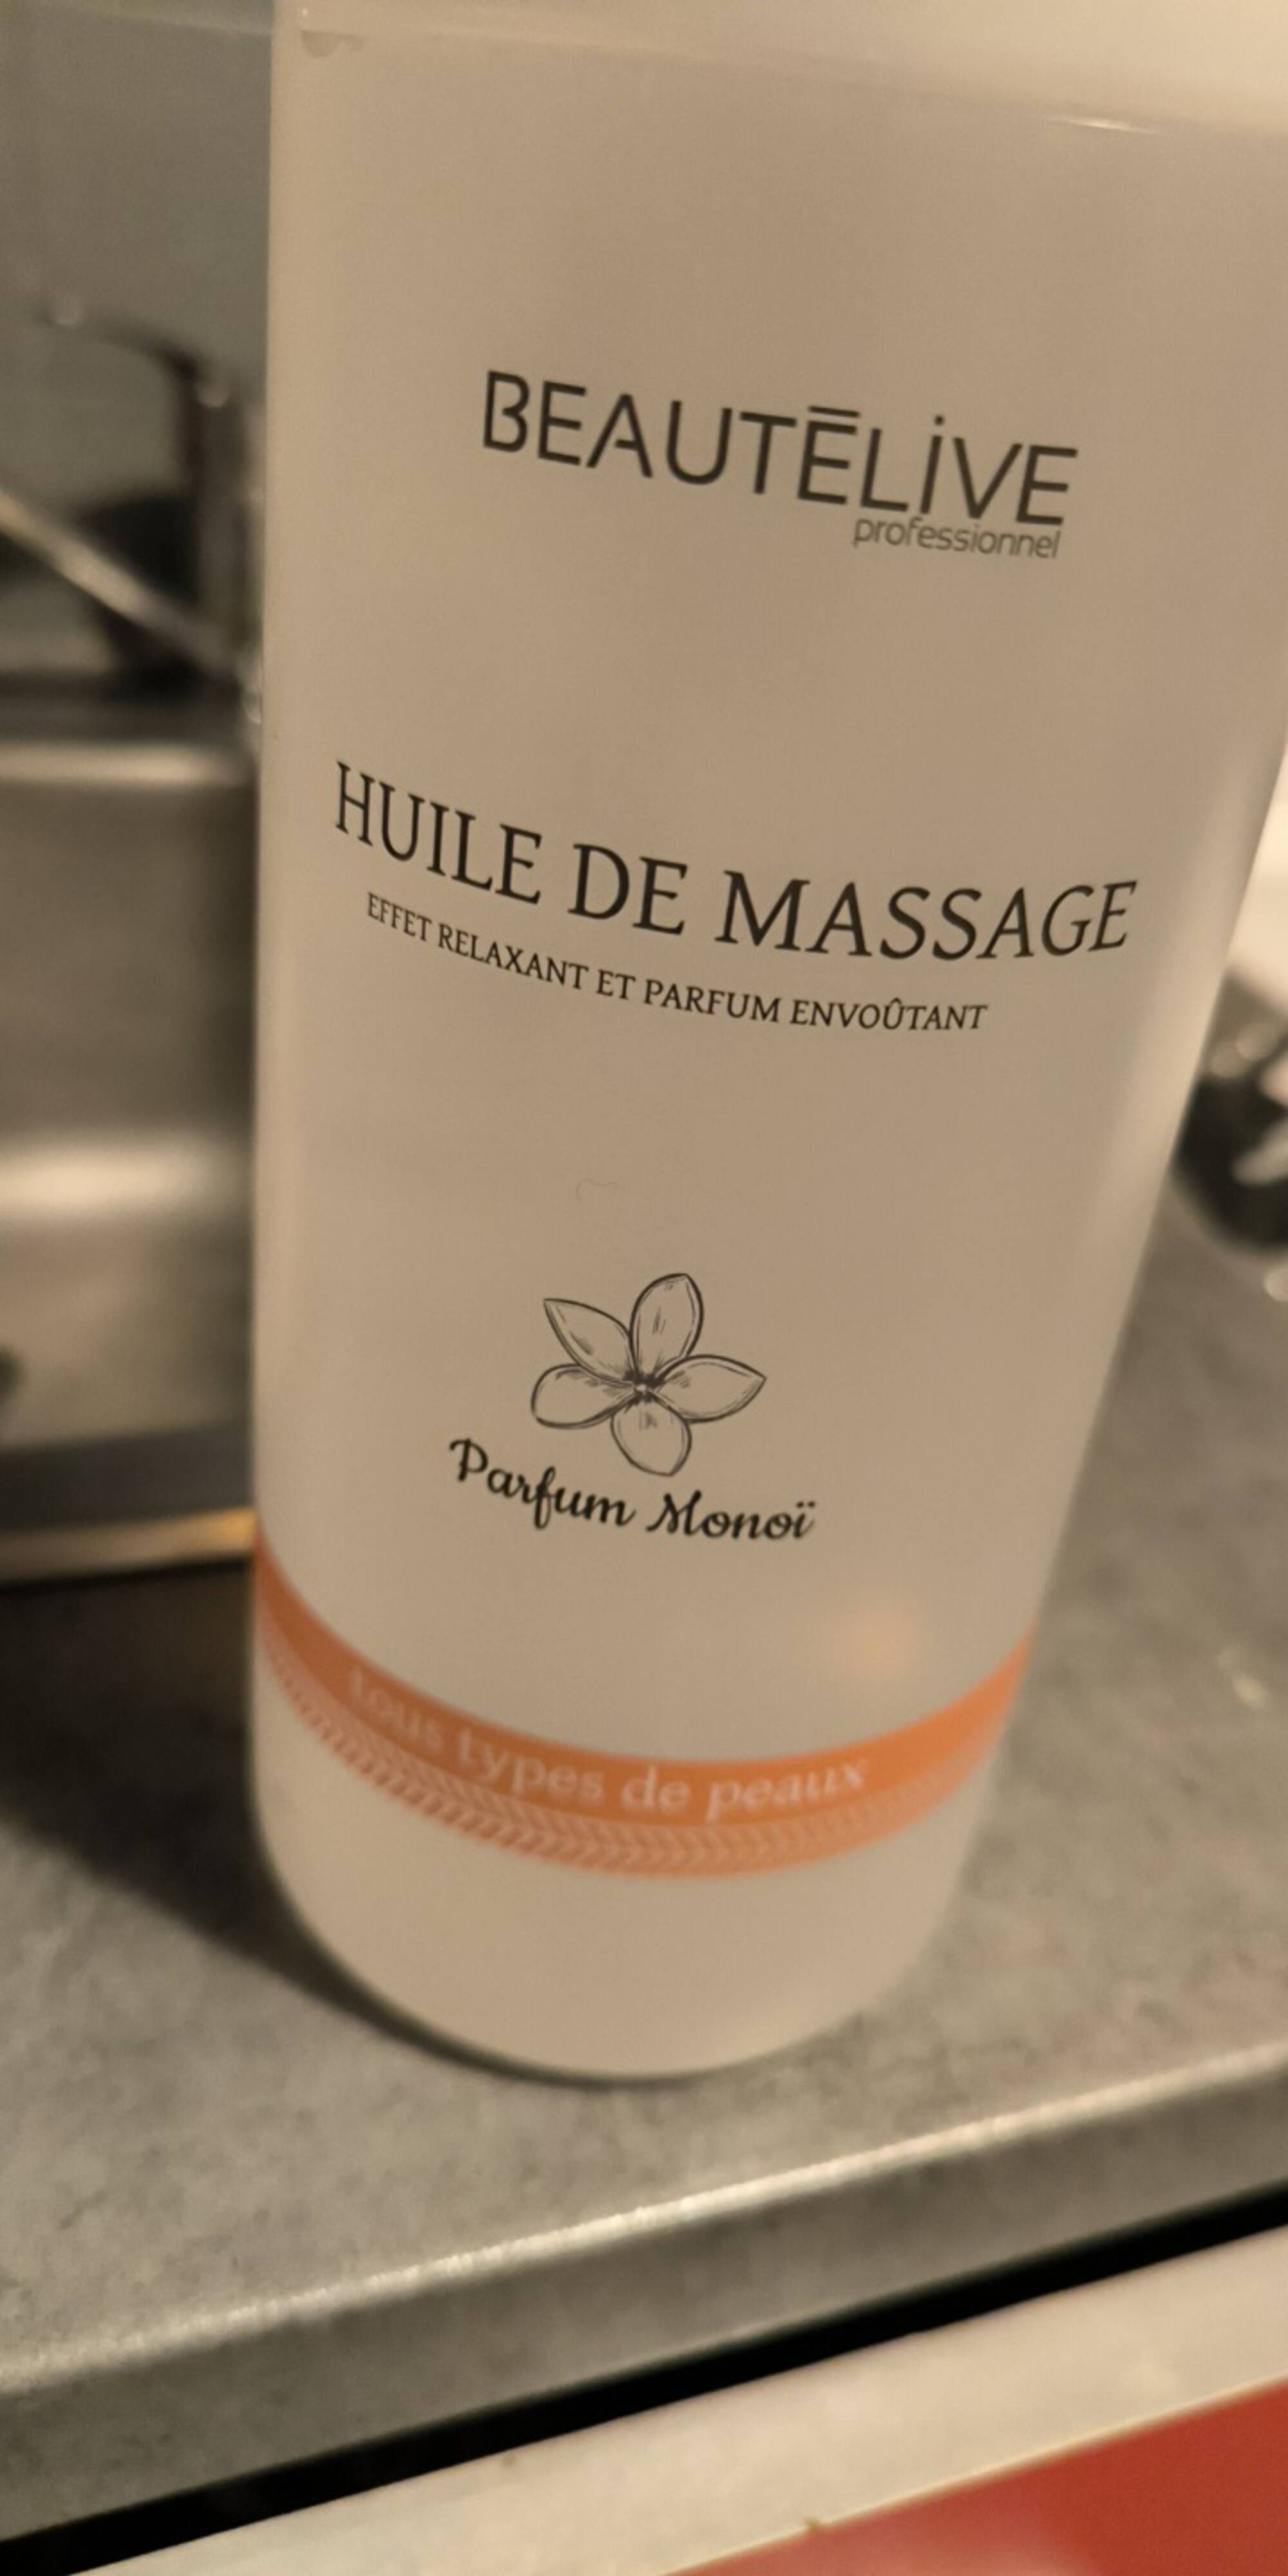 BEAUTÉLIVE - Huile de massage parfum monoï